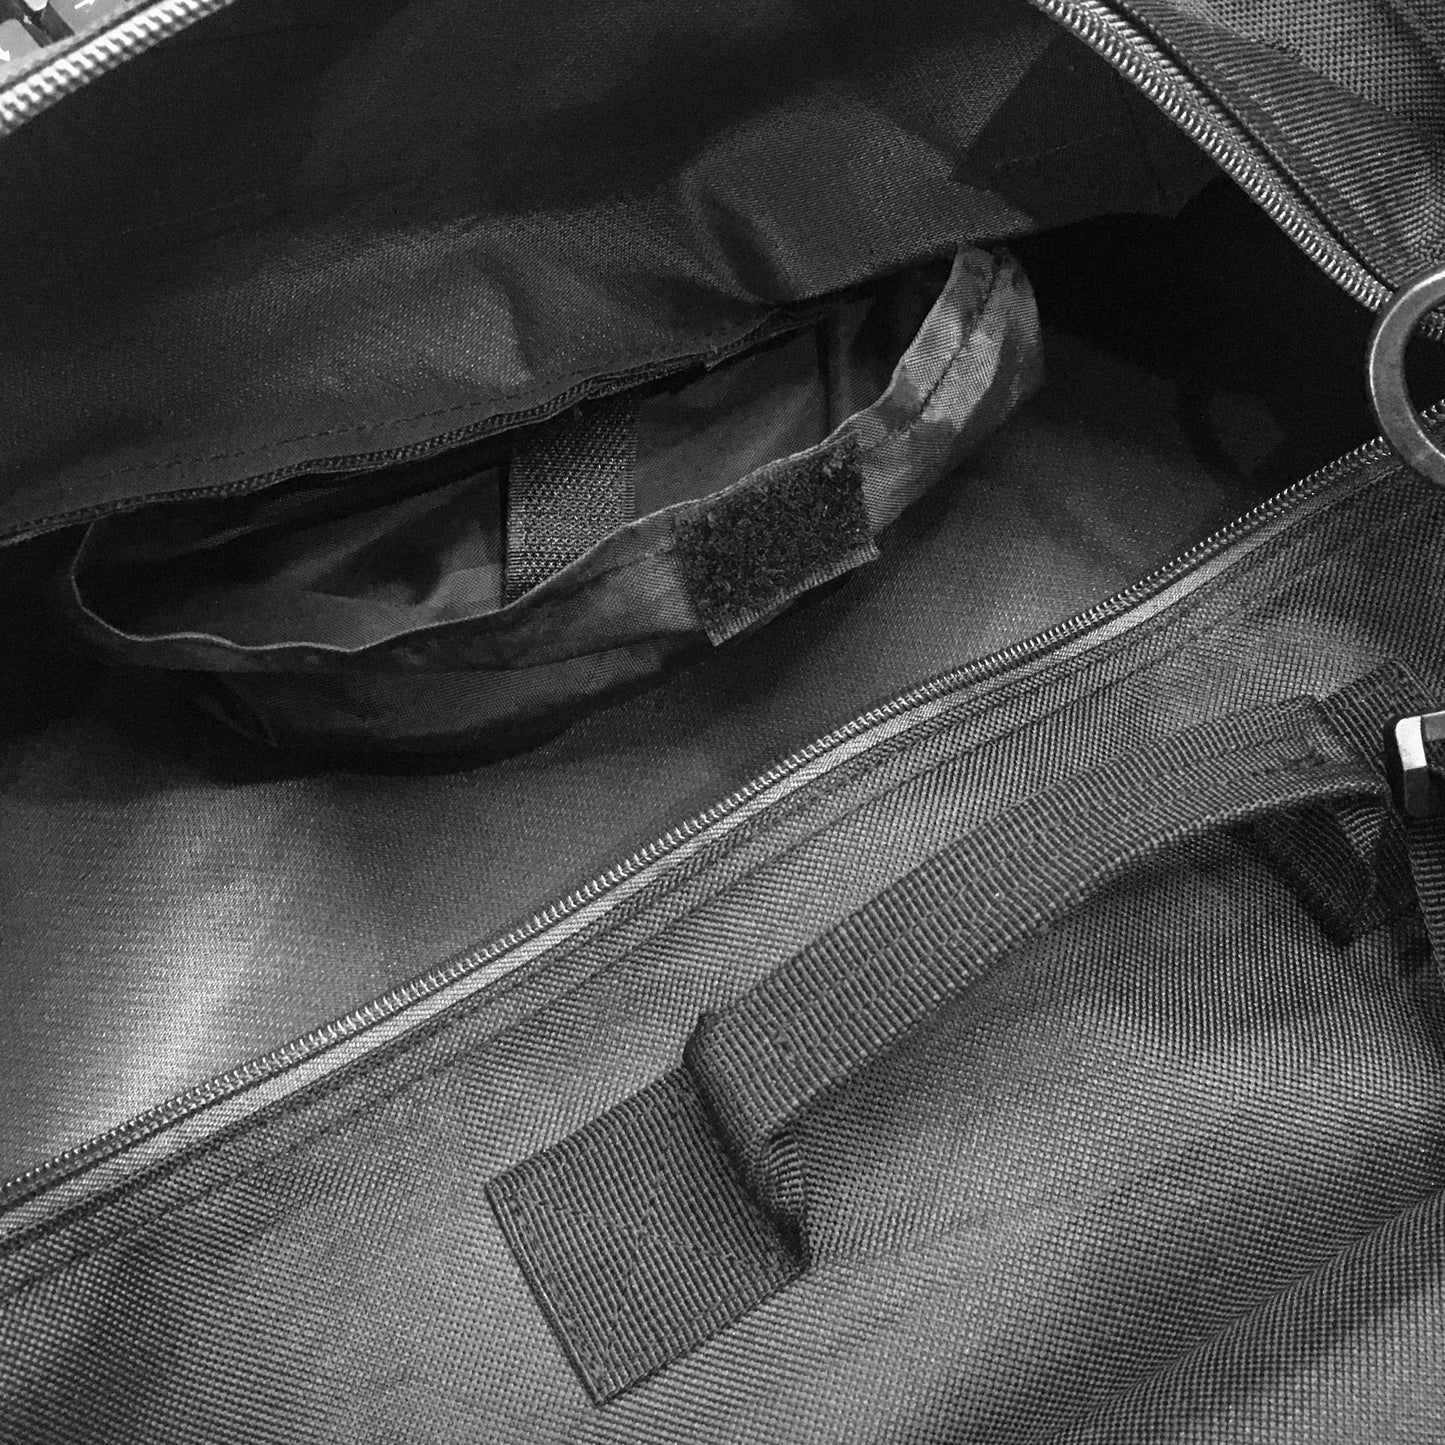 DR.ÖTEK Multipurpose Carry Bag